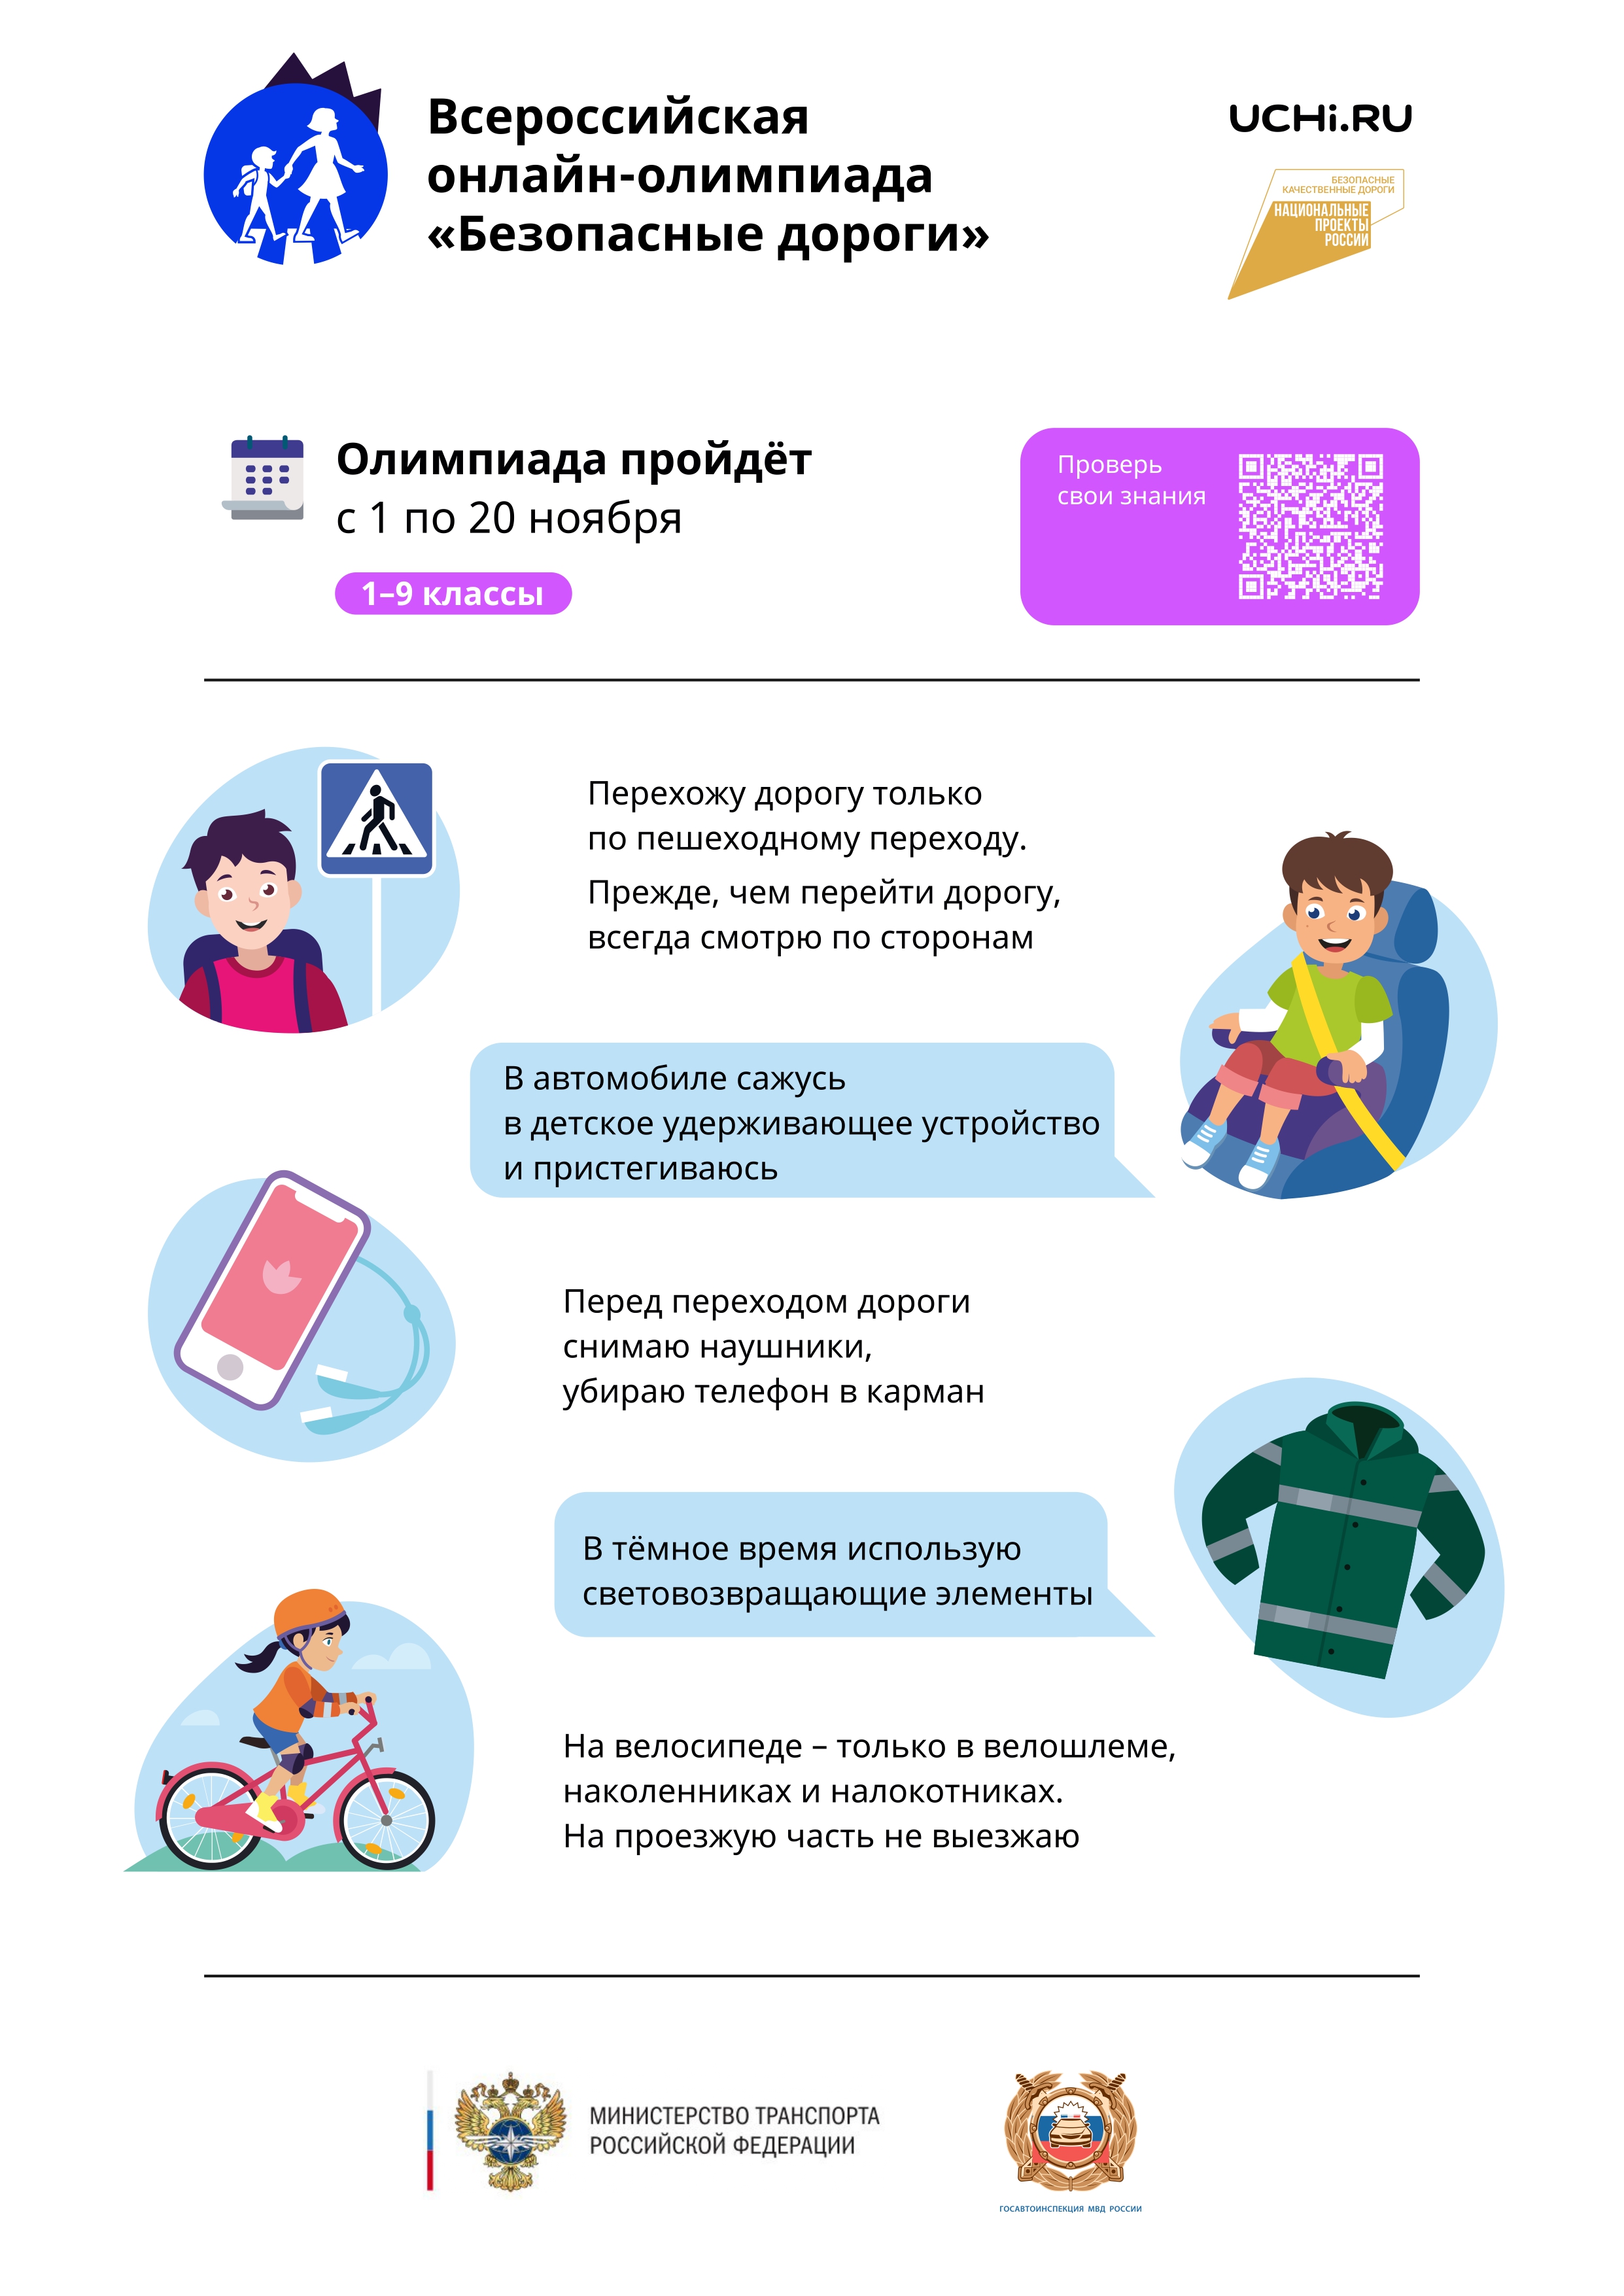 Всероссийская онлайн-олимпиада «Безопасные дороги»..